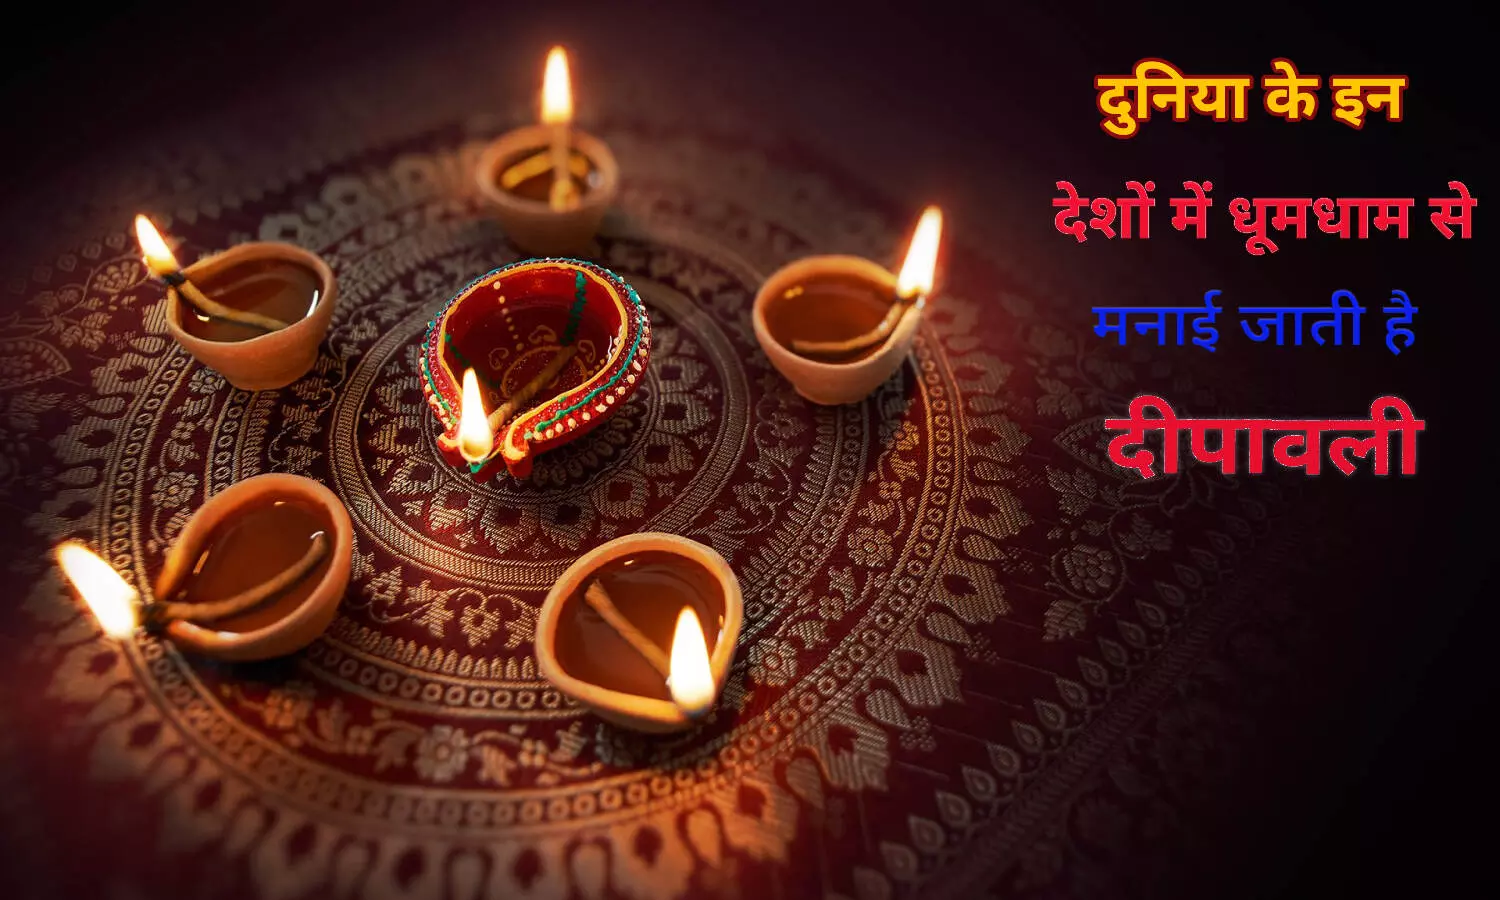 Diwali Celebration: भारत के अलावा दुनिया के इन देशों में धूमधाम से मनाई जाती है दिवाली, जानें